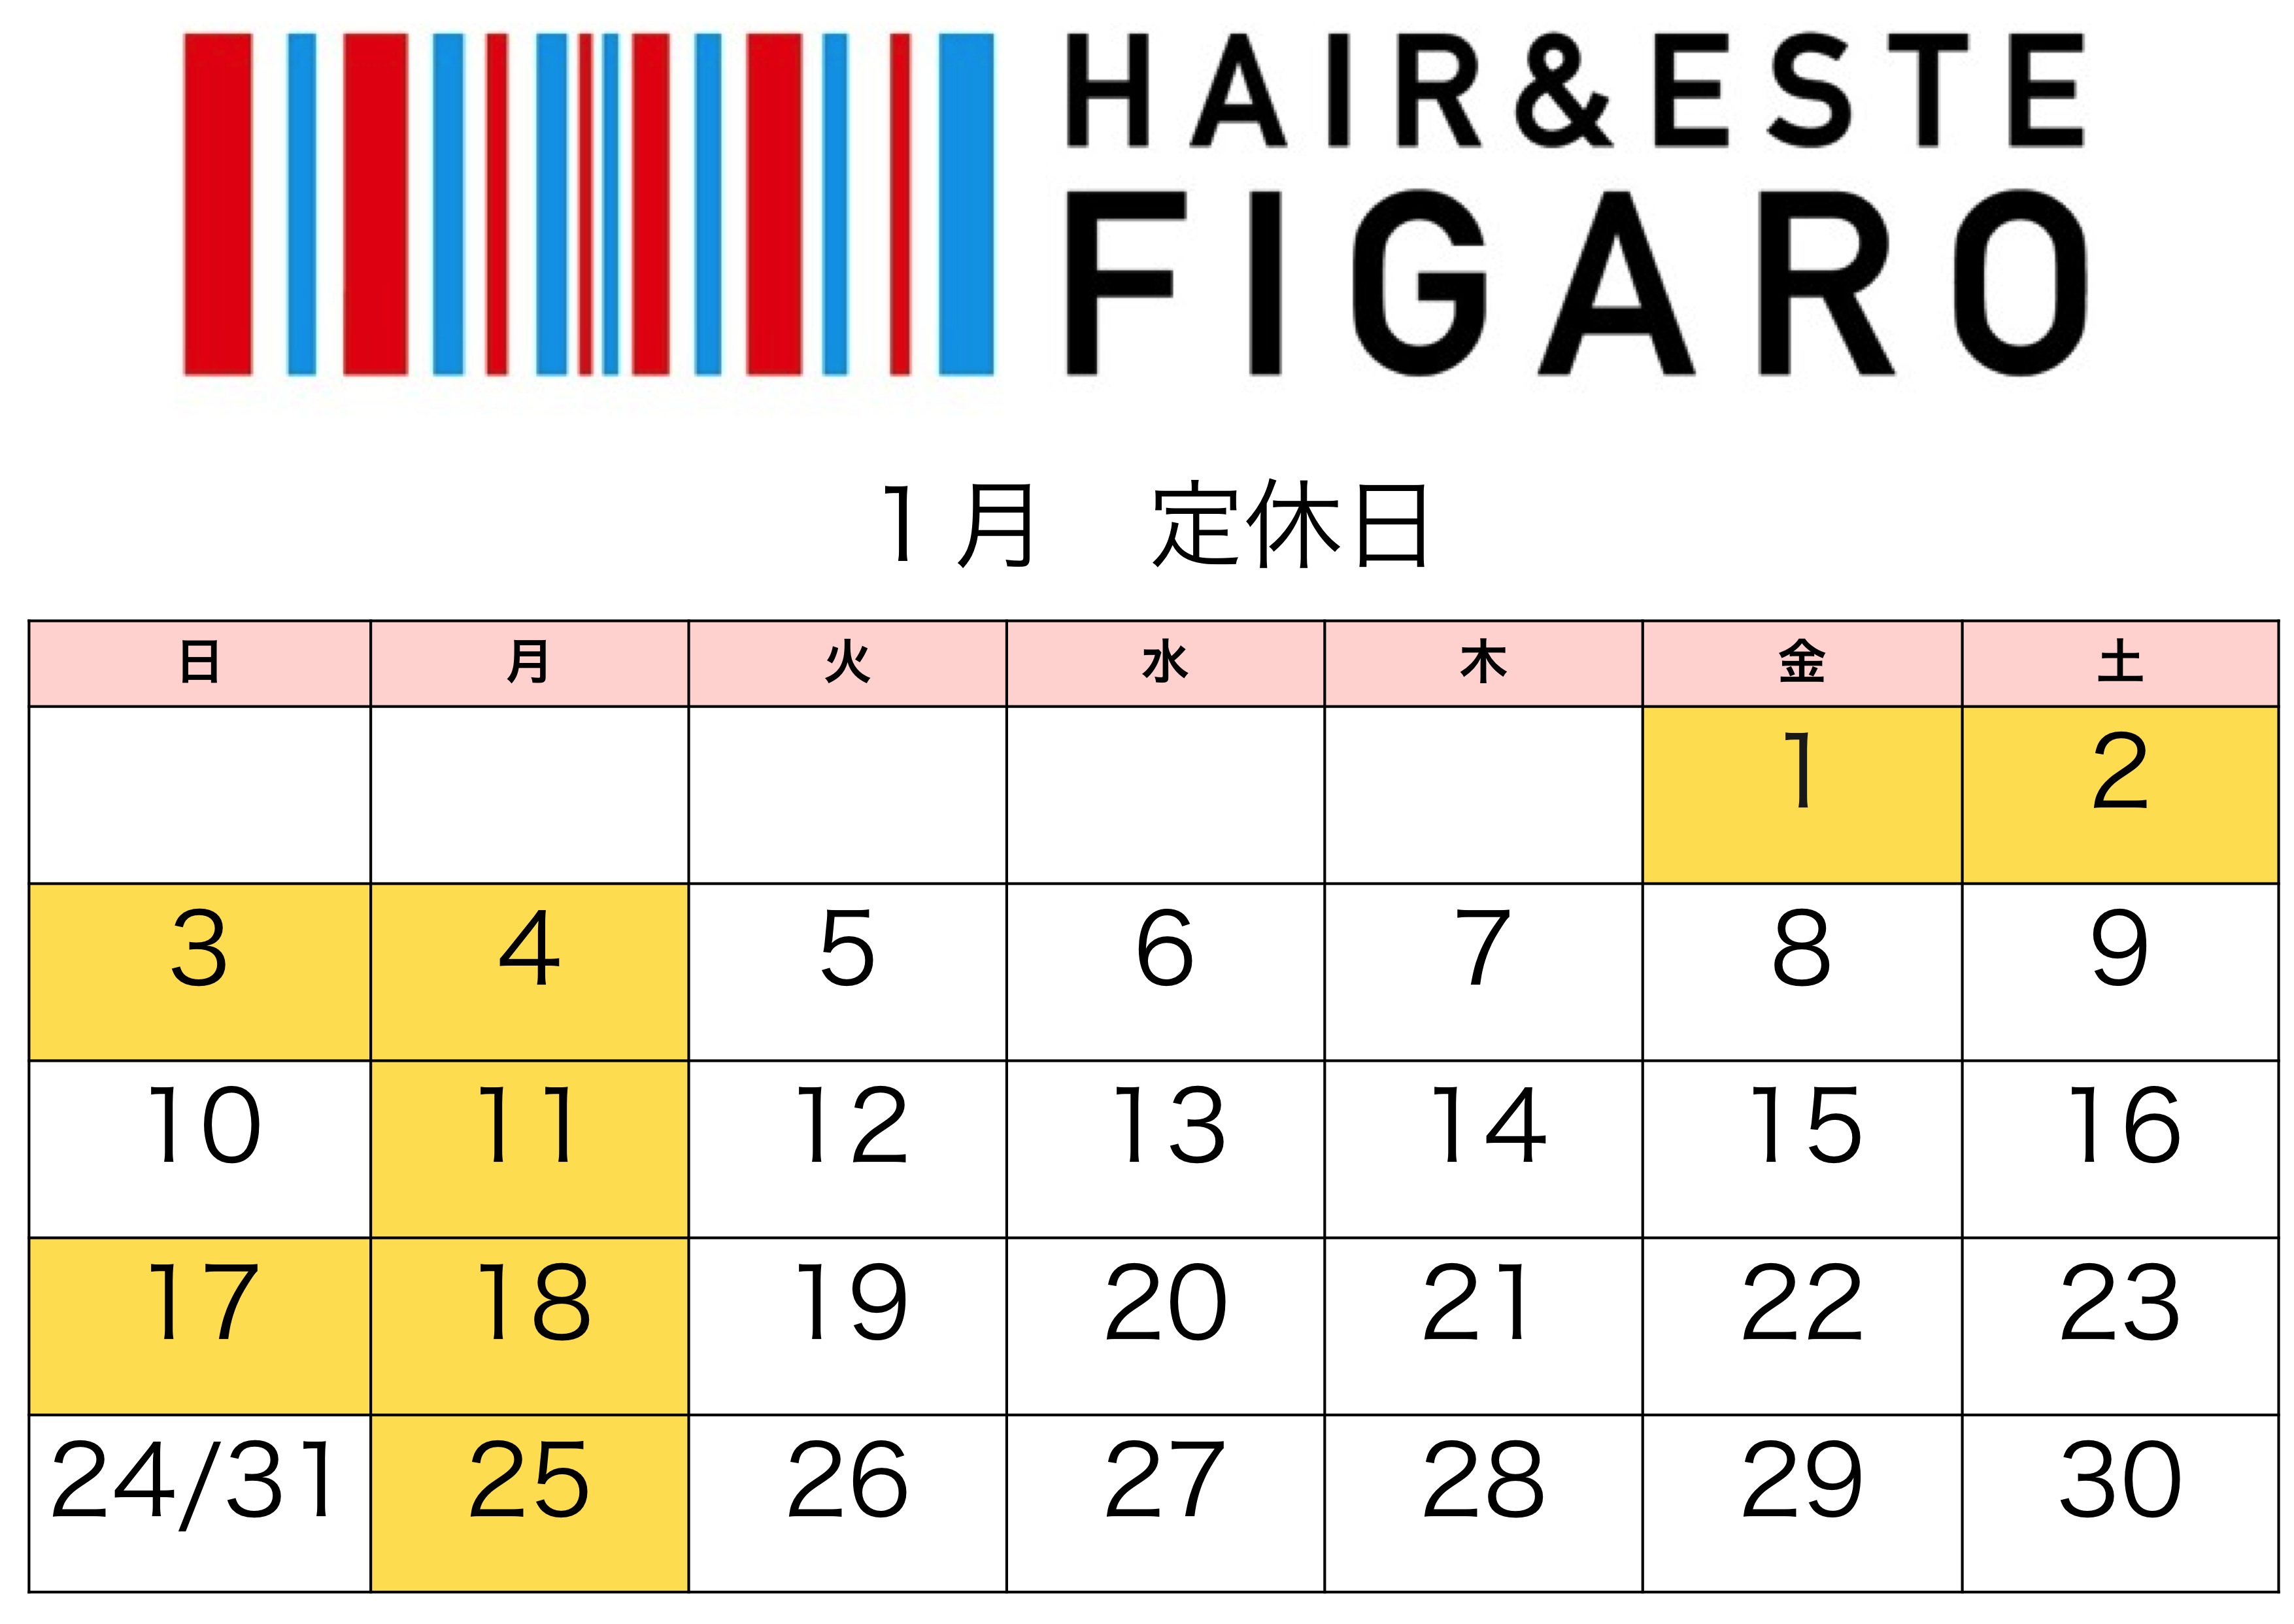 http://figaro-hair.com/blog/2016.1.jpg